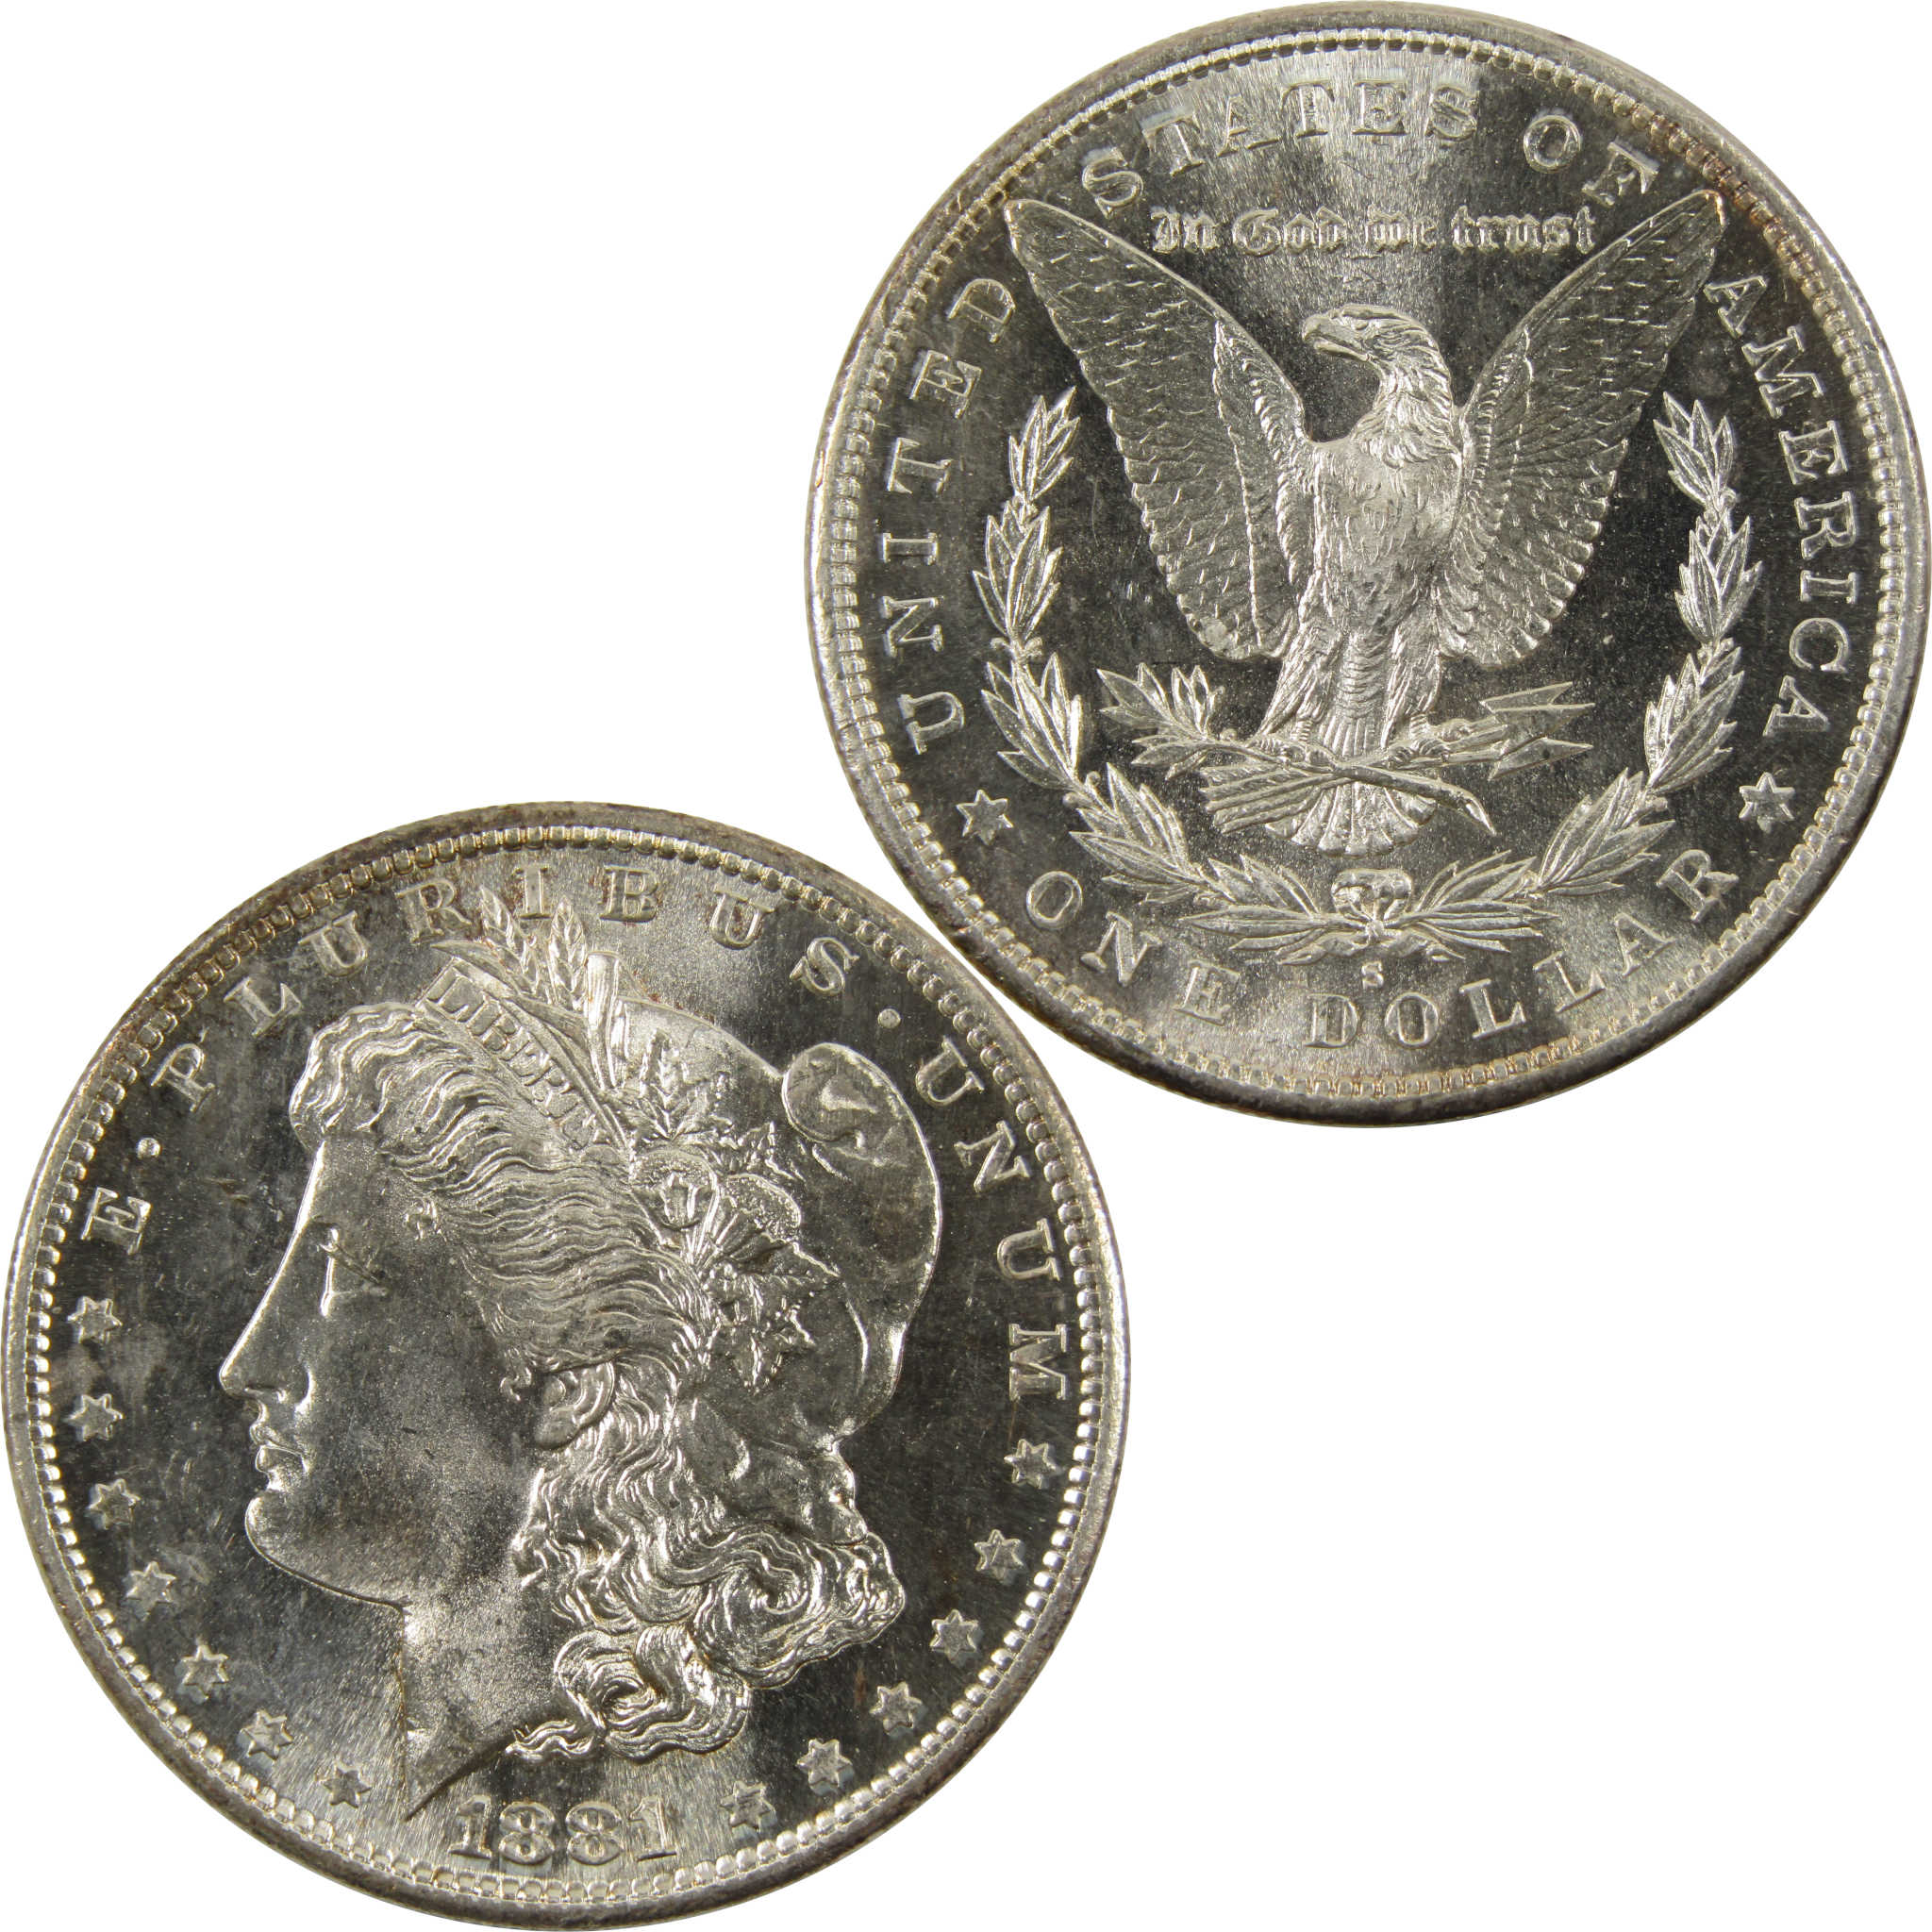 1881 S Morgan Dollar Very Choice BU 90% Silver $1 Coin SKU:I9605 - Morgan coin - Morgan silver dollar - Morgan silver dollar for sale - Profile Coins &amp; Collectibles